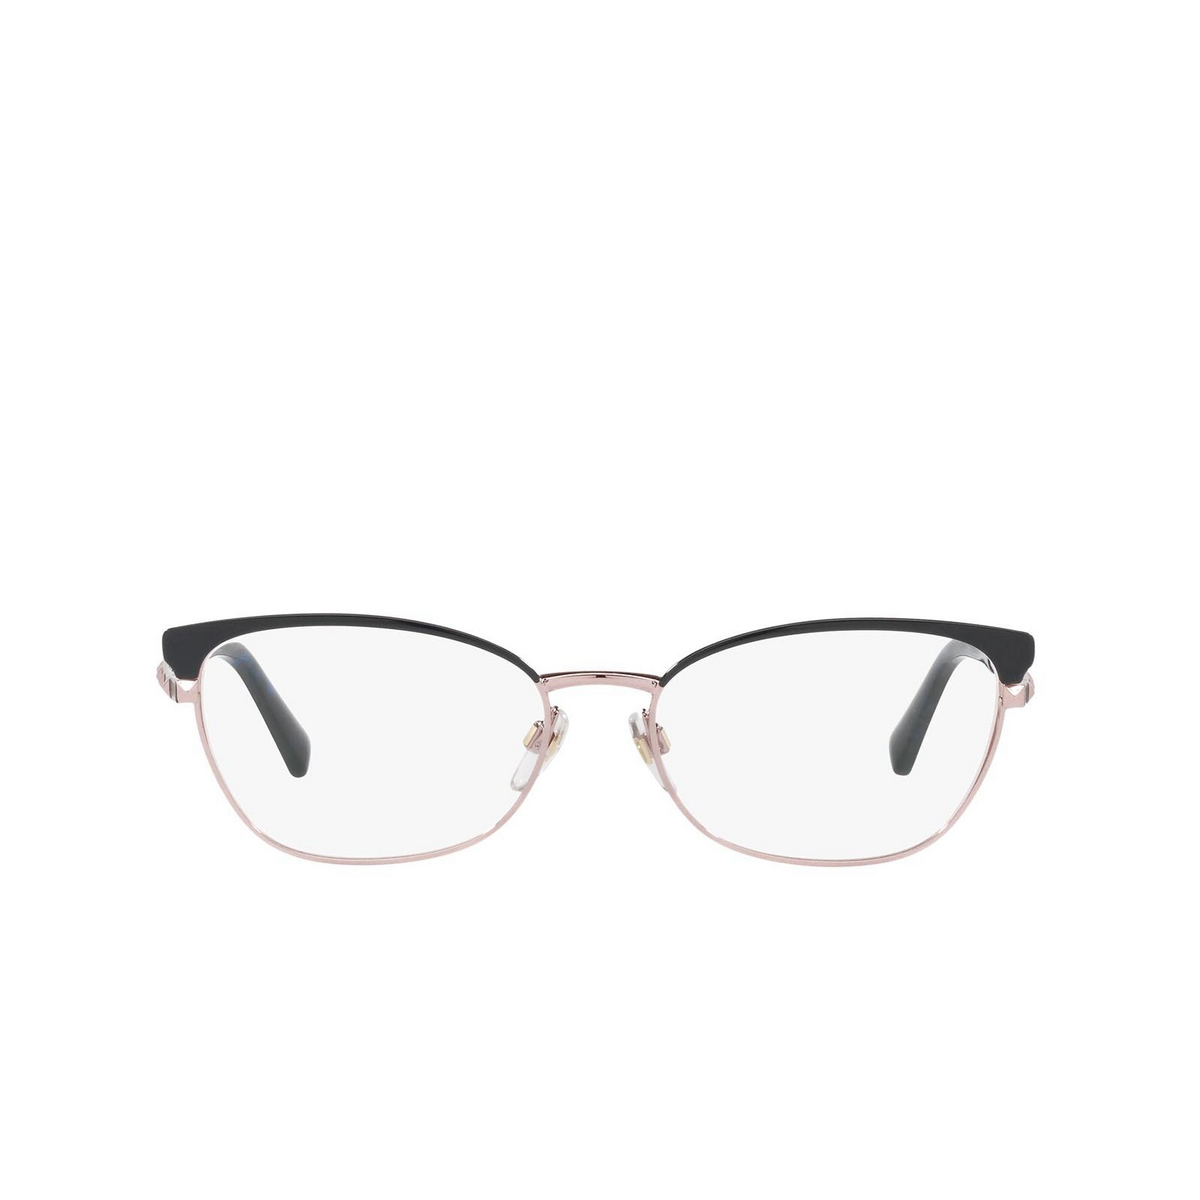 Valentino® Cat-eye Sunglasses: VA1022 color 3004 Copper/blue - front view